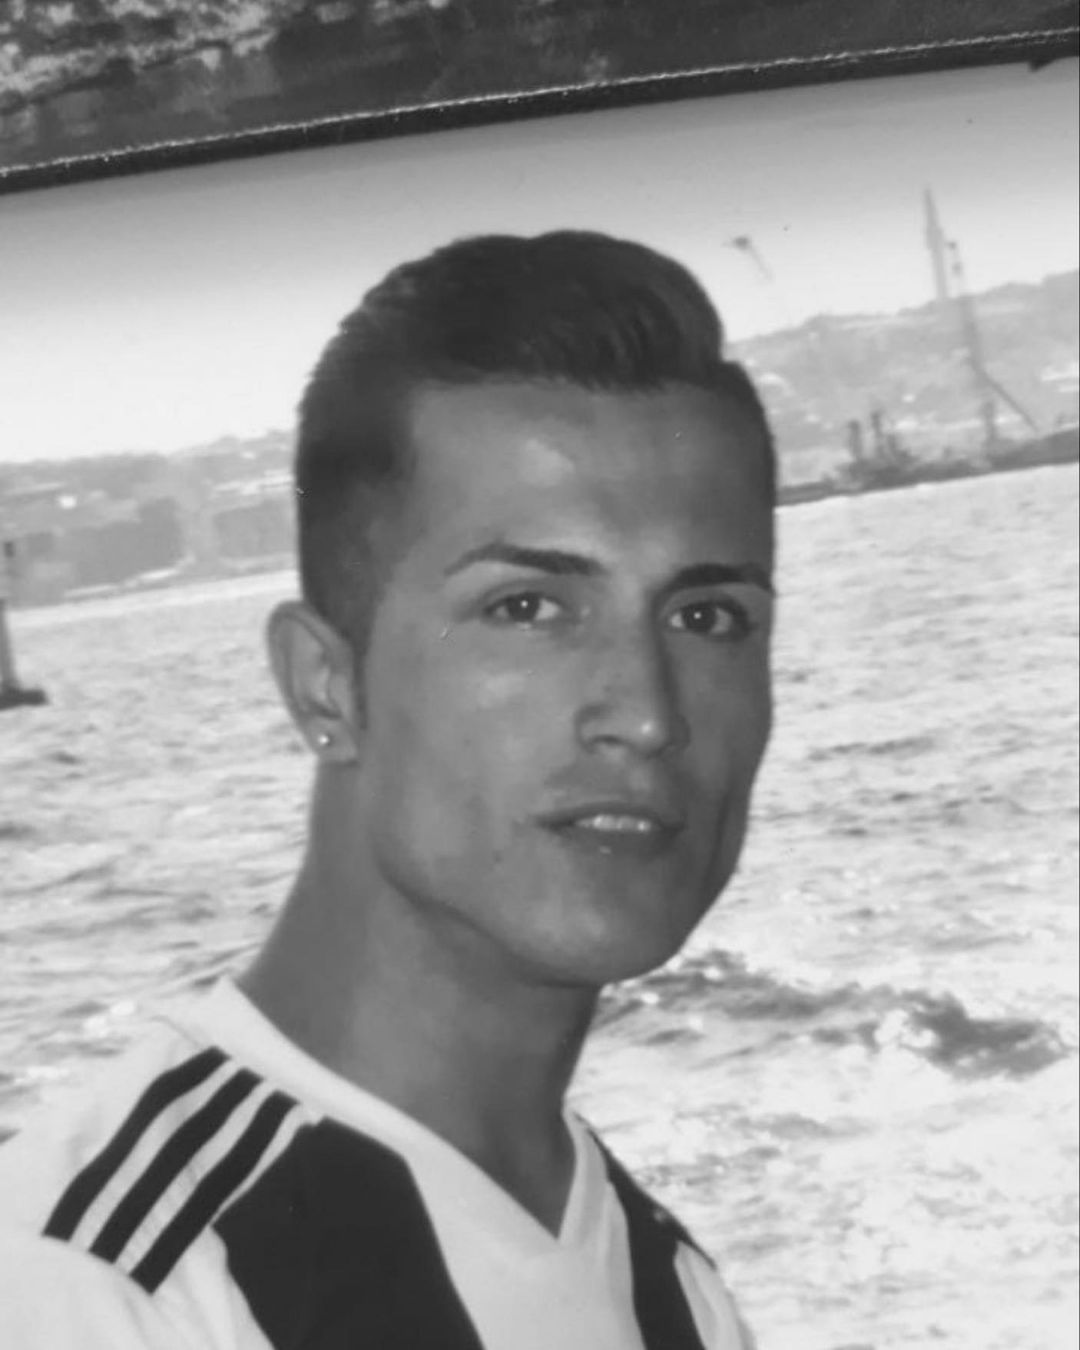 Bewar Abdullah un jeune influenceur devenu star en raison de sa ressemblance frappante avec Cristiano Ronaldo. Il mène une vie incroyable.